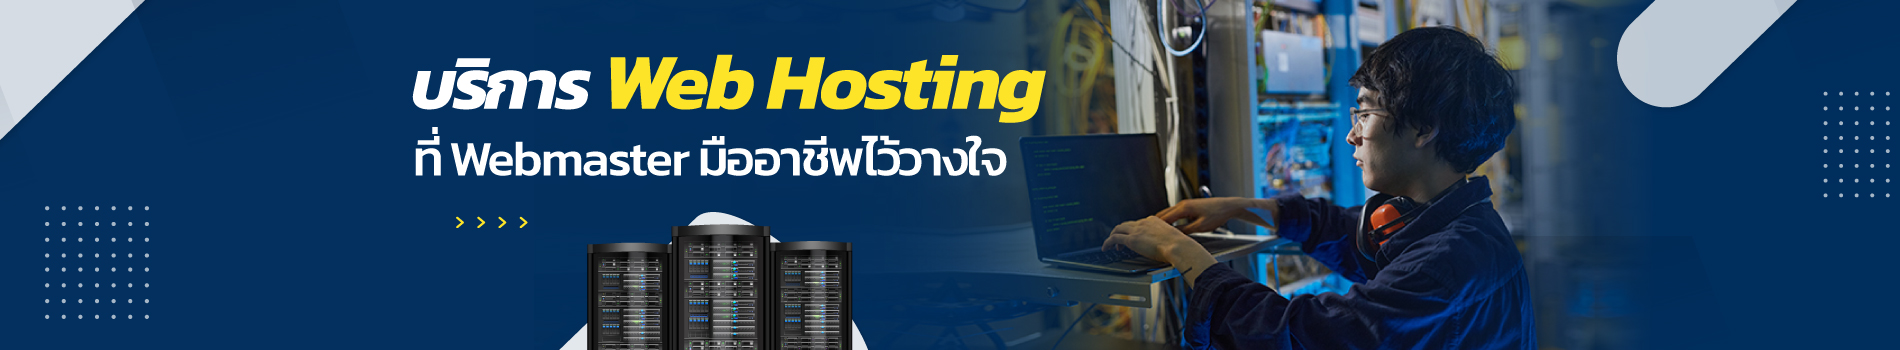 Banner Web hosting